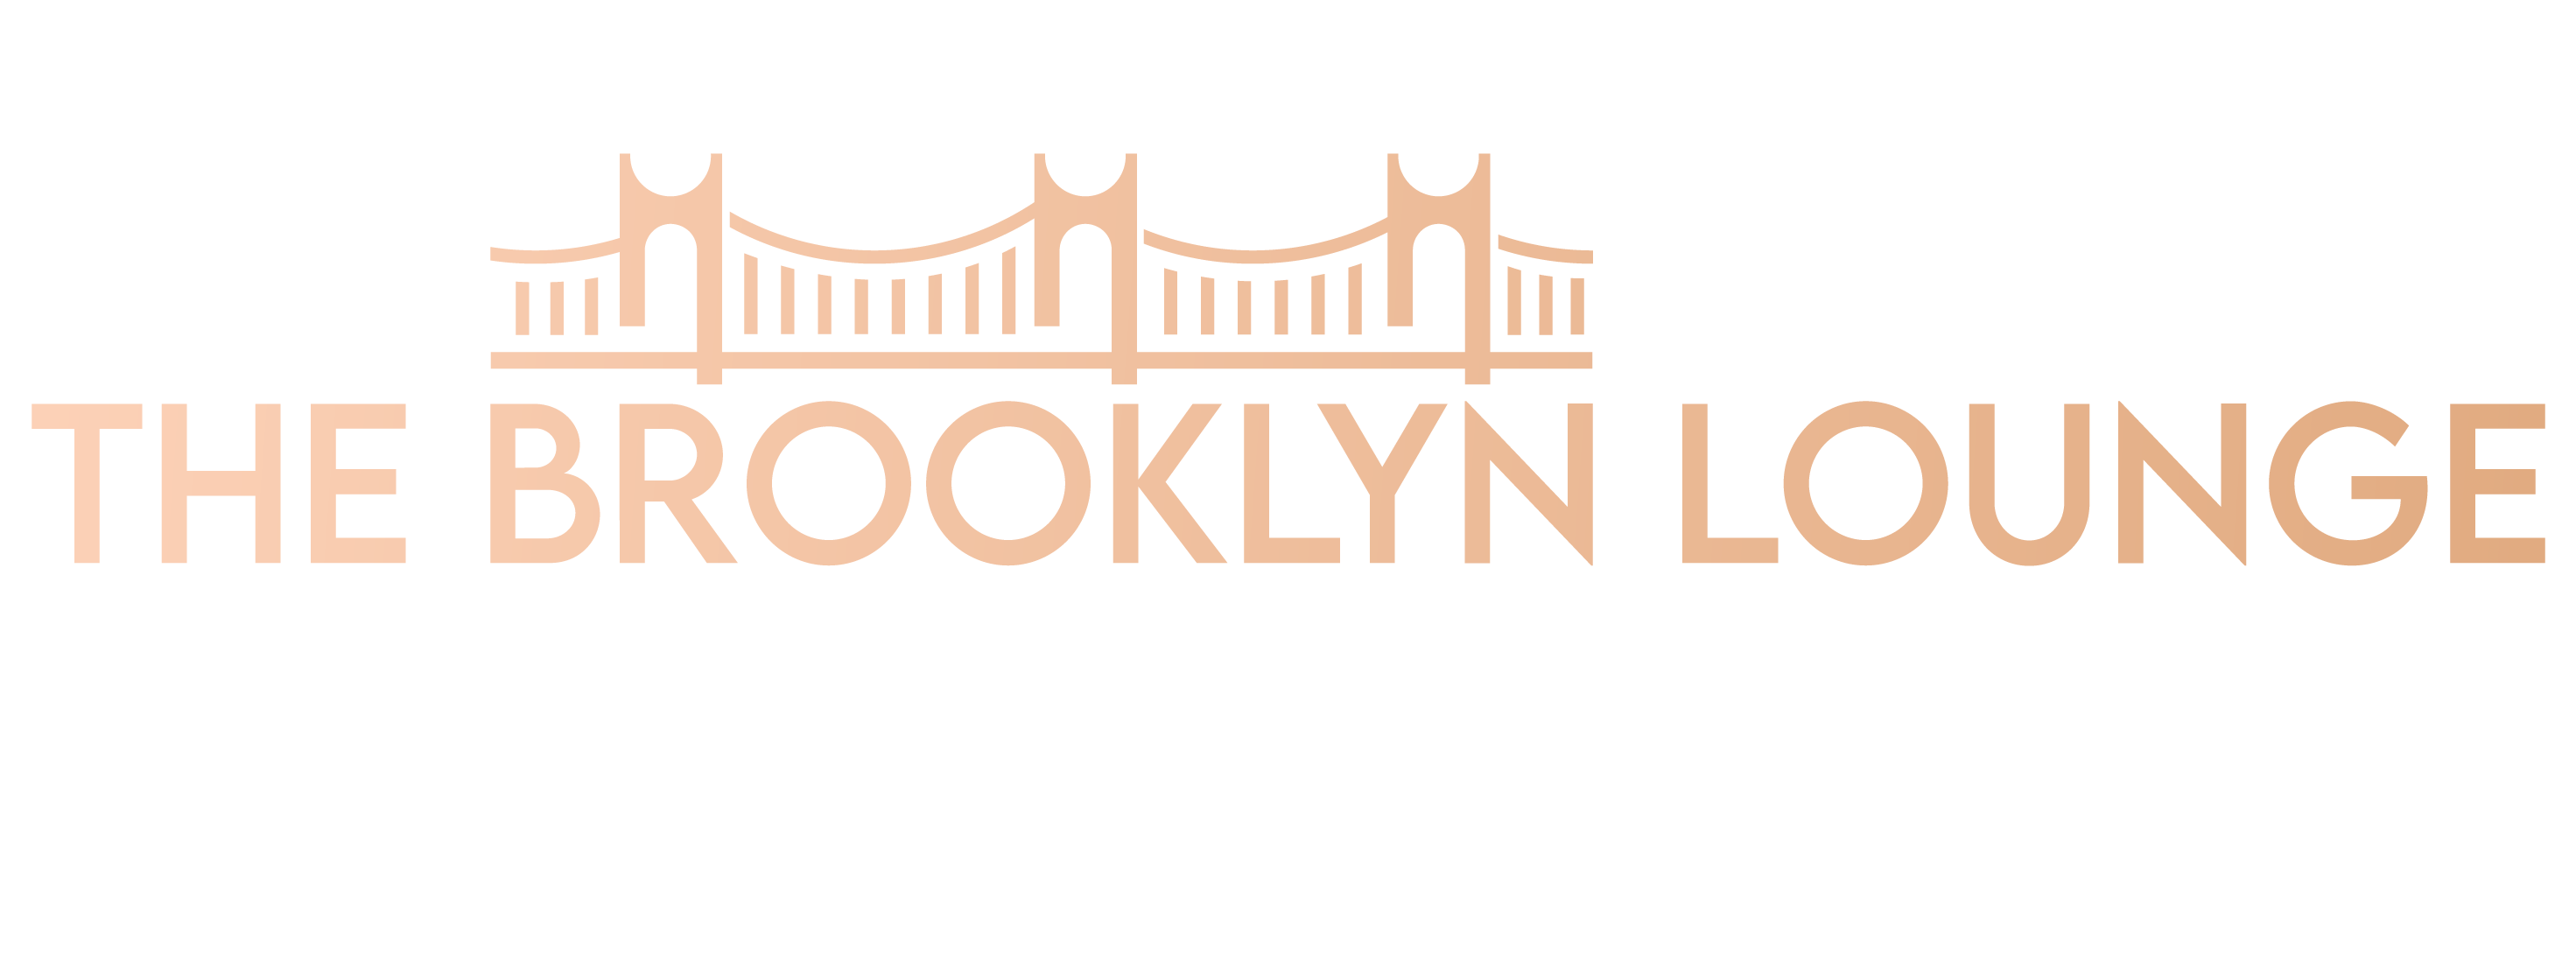 The Brooklyn Lounge